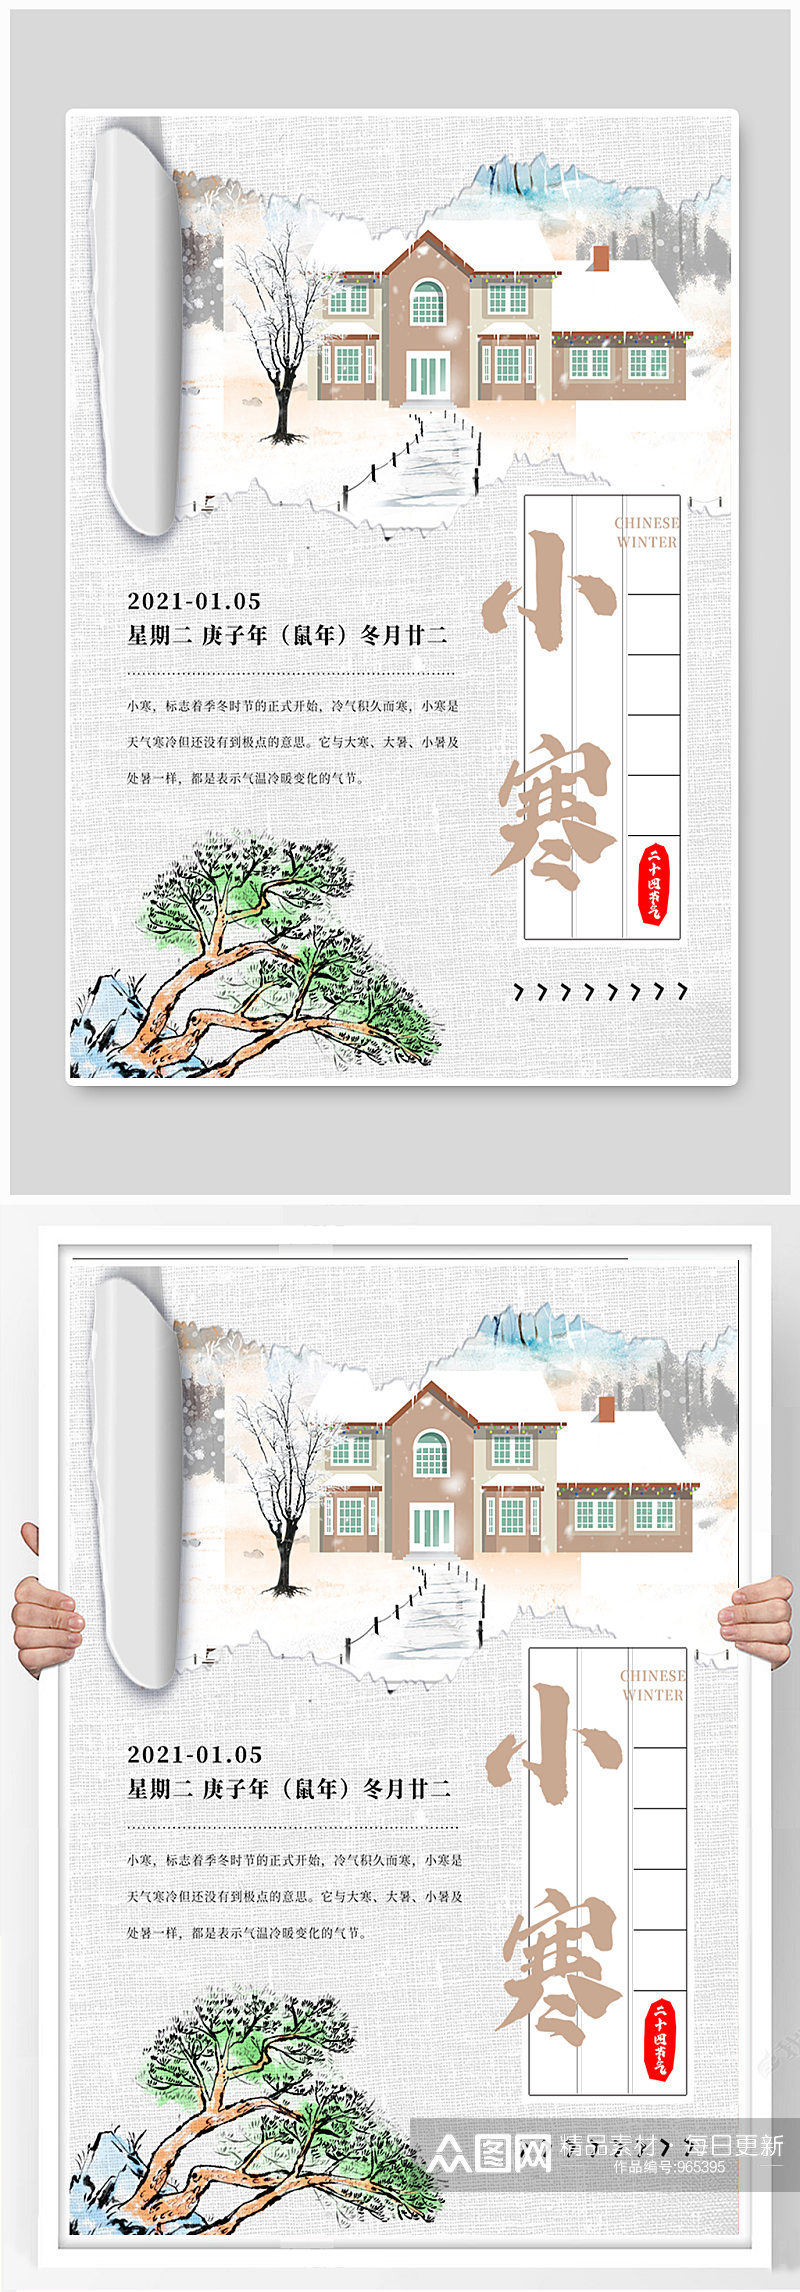 中国传统节日二十四节气之小寒海报素材